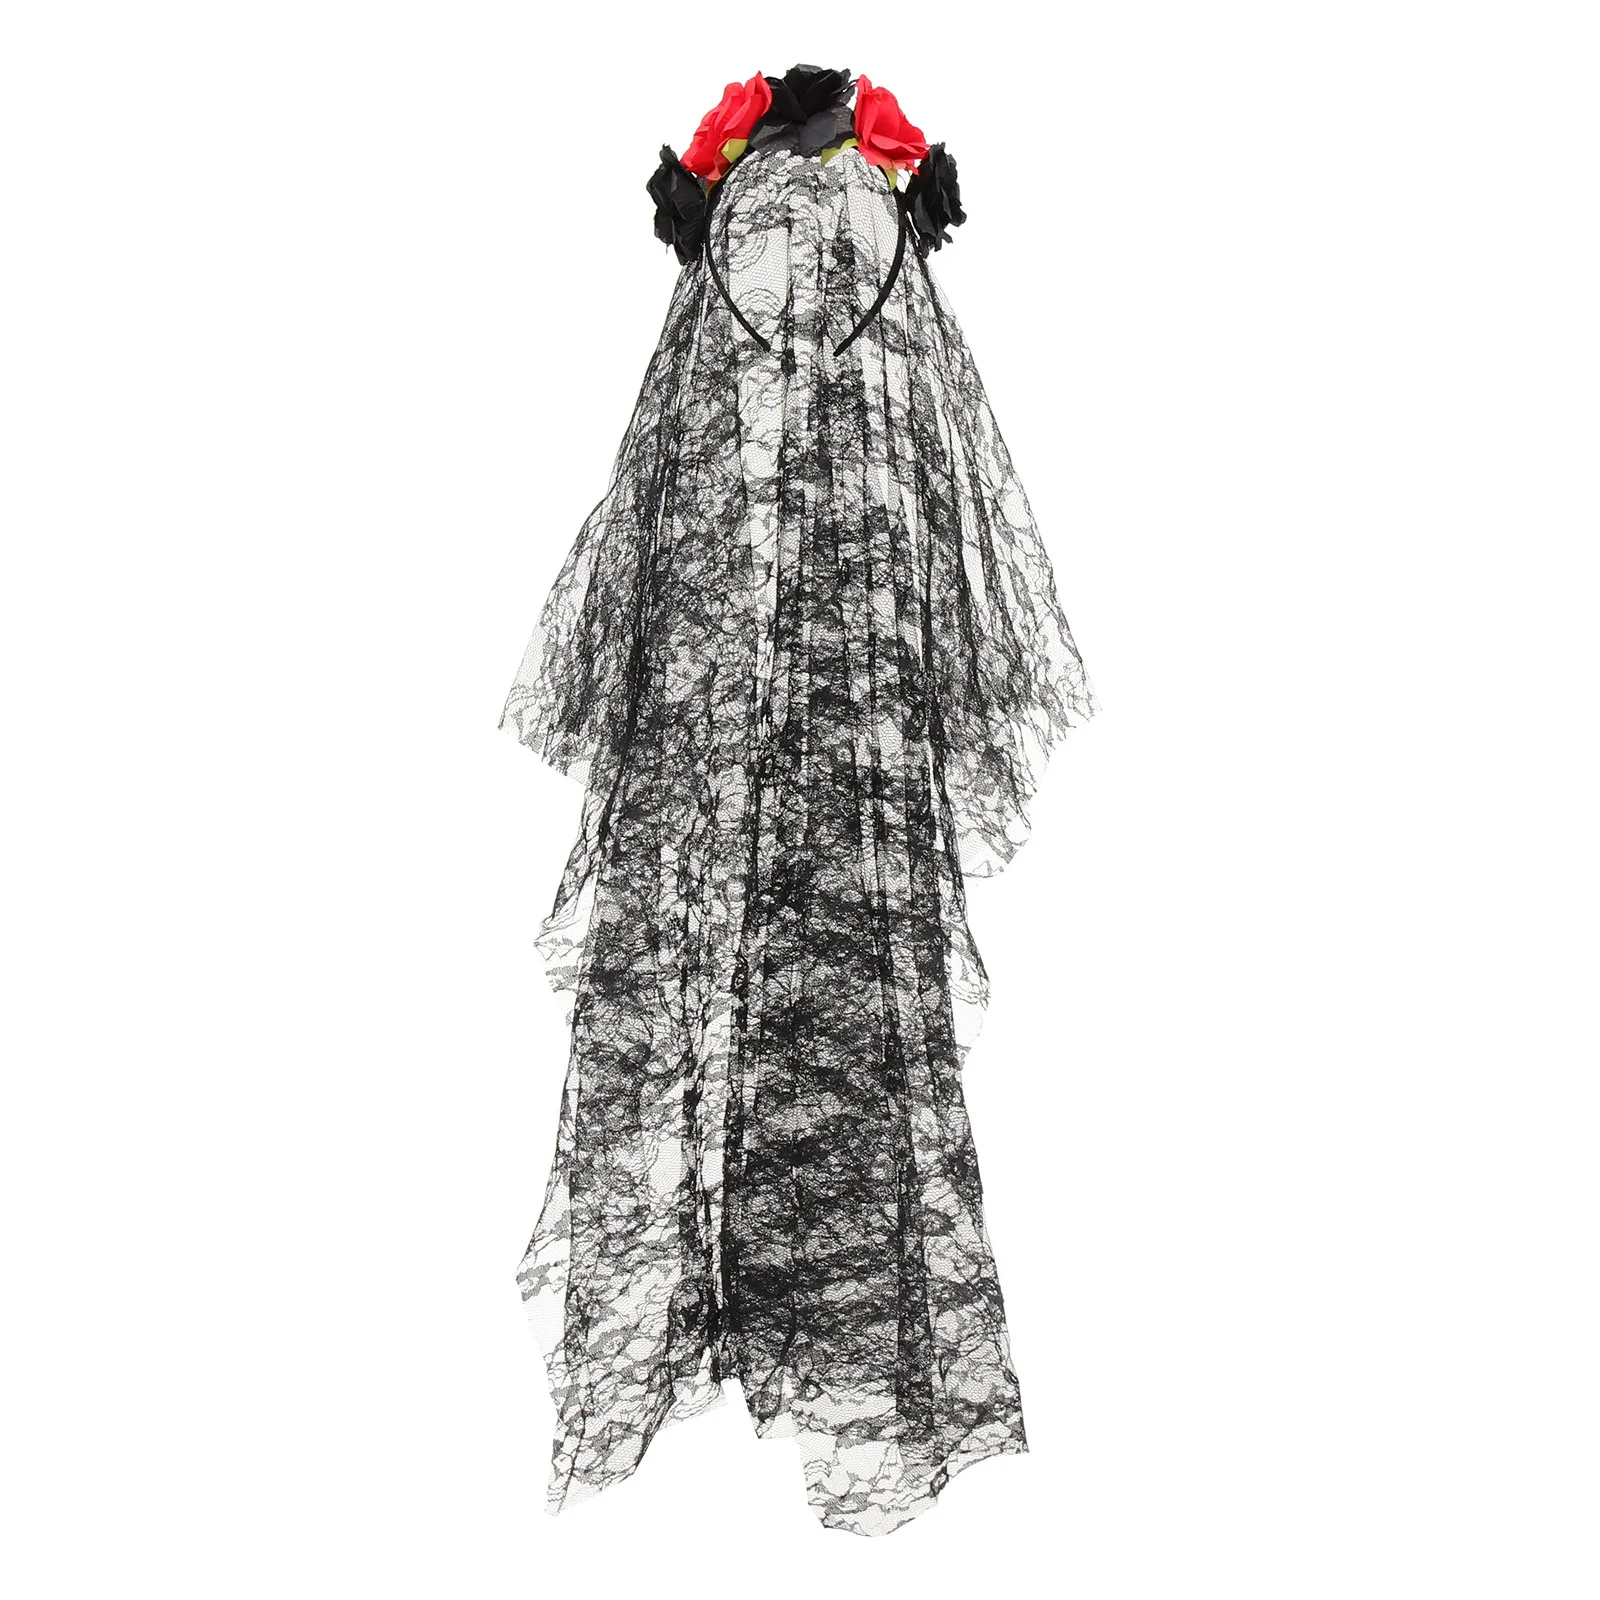 

Повязка на голову с розой Цветочная вуаль обручи для волос Корона Заколки для невесты девушки поддельные Хэллоуин головной убор дизайн